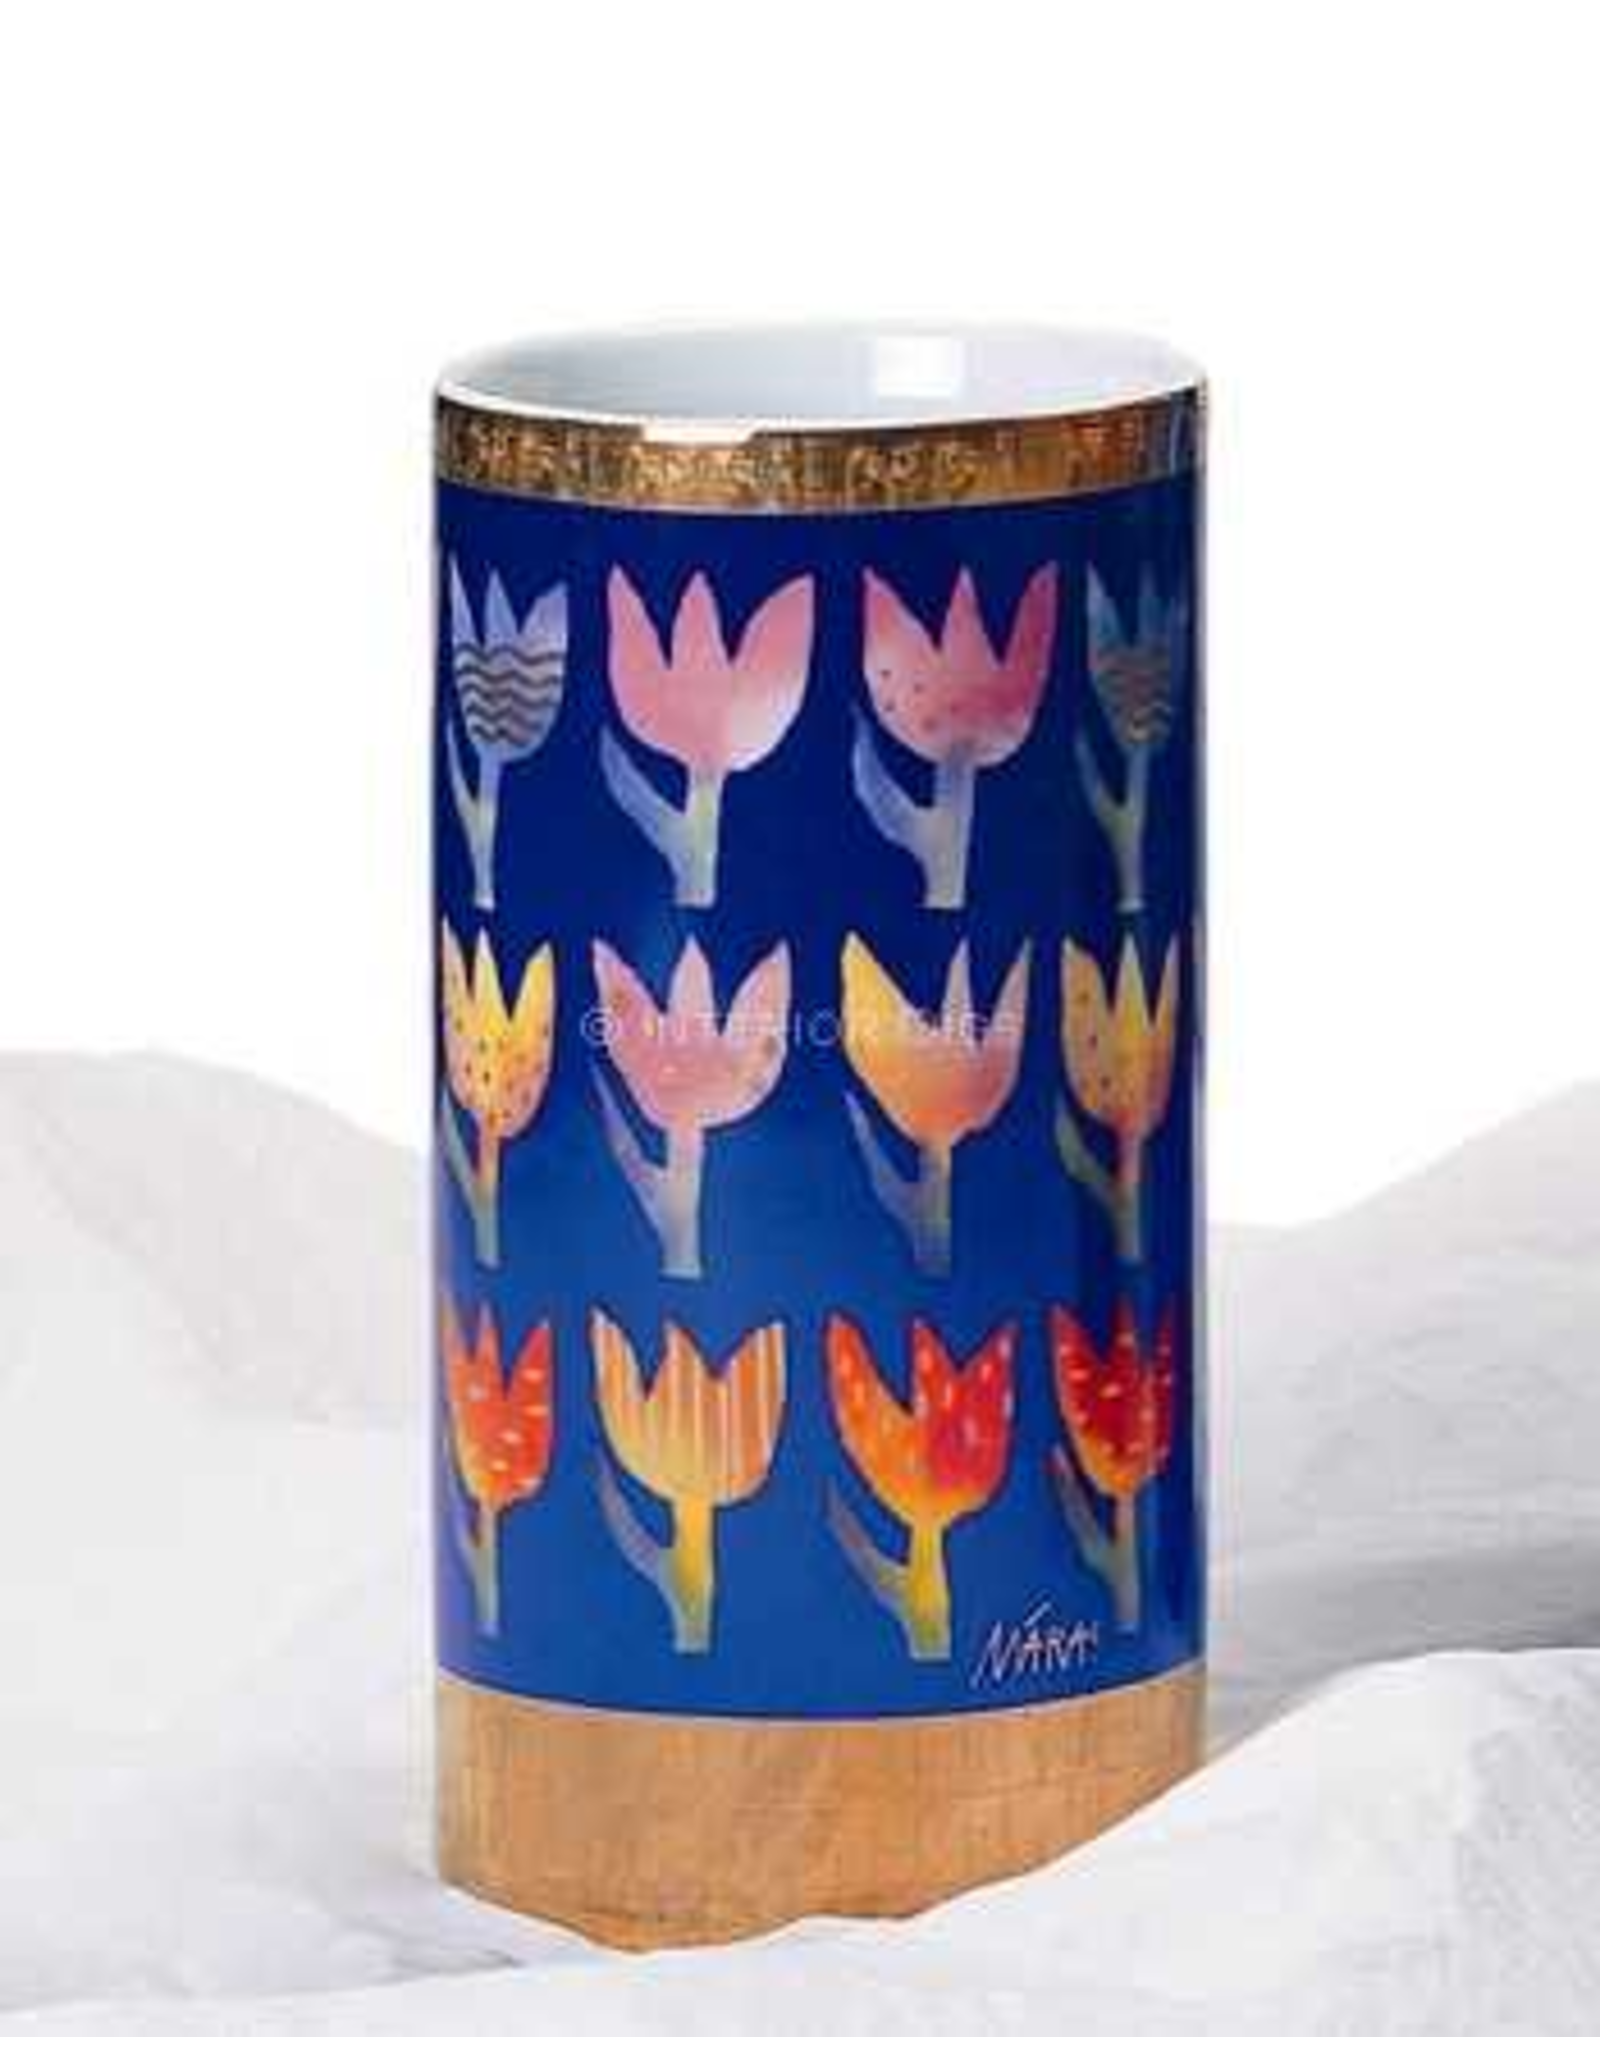 Artis Orbis Vase MĀRA! Feel The Energy! Tulips Vase In Porcelain 8H inches